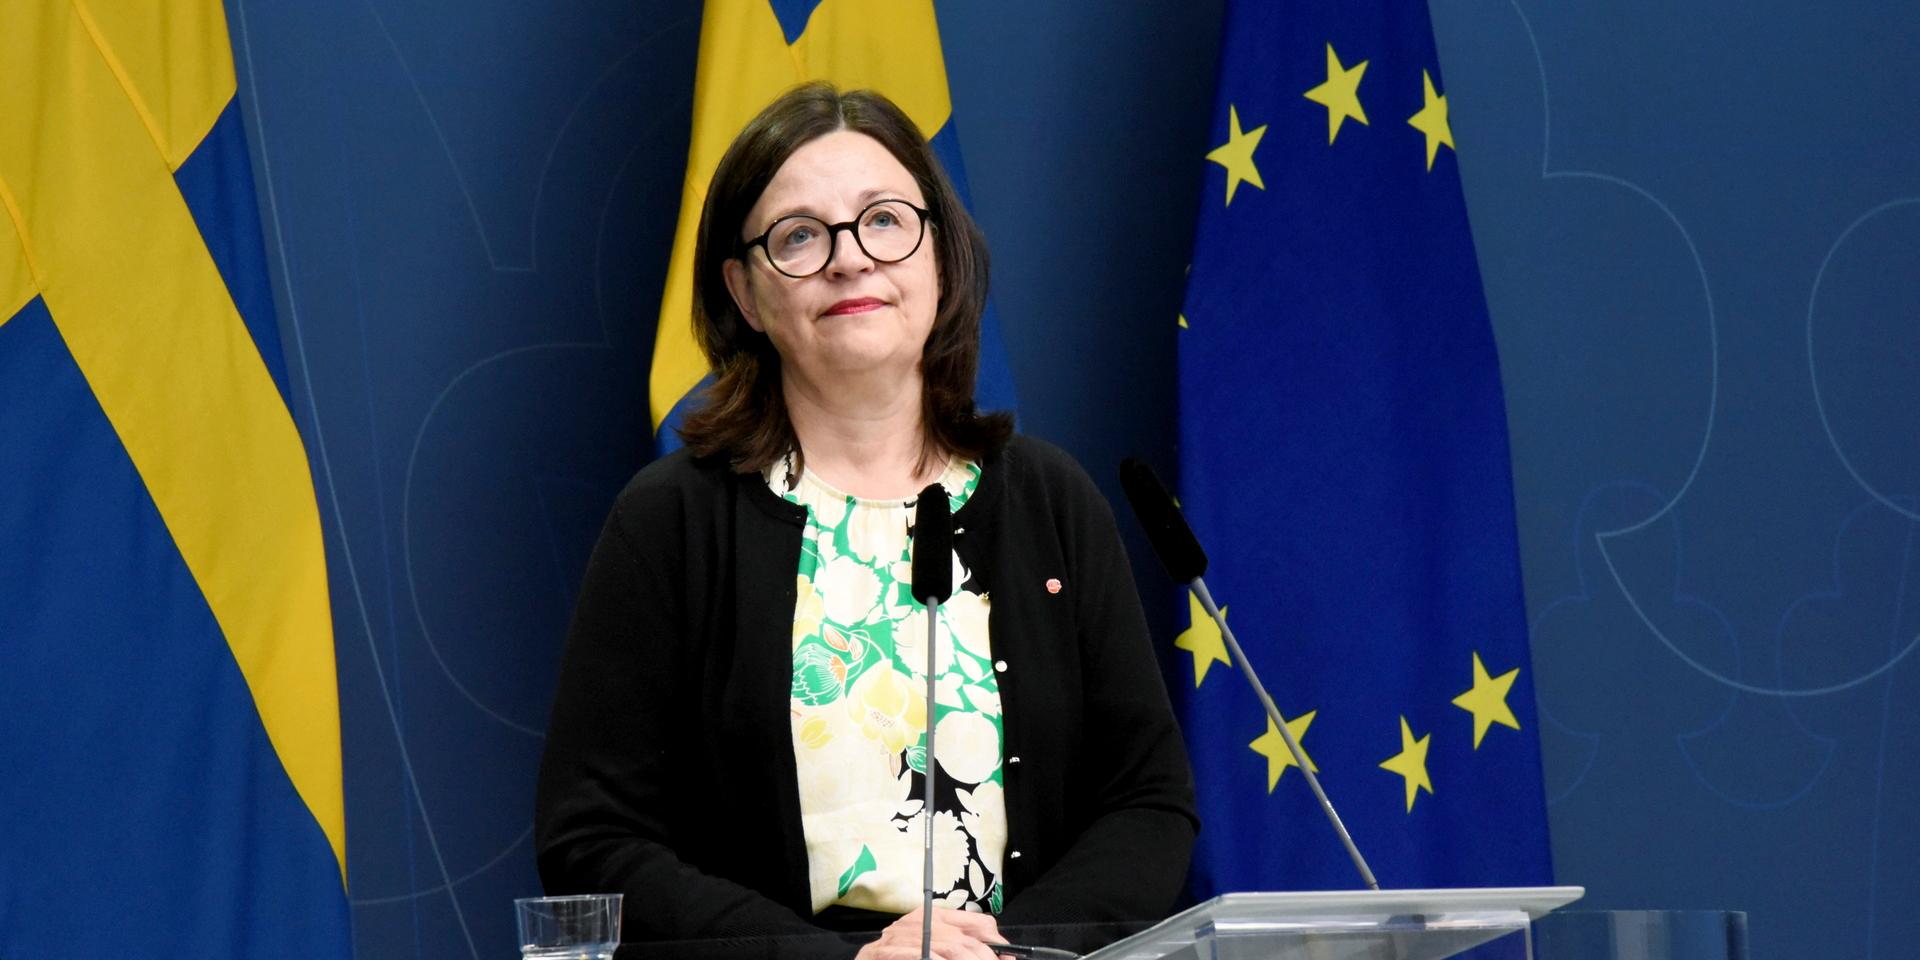 Utbildningsminister Anna Ekström (S) vid torsdagens pressträff.